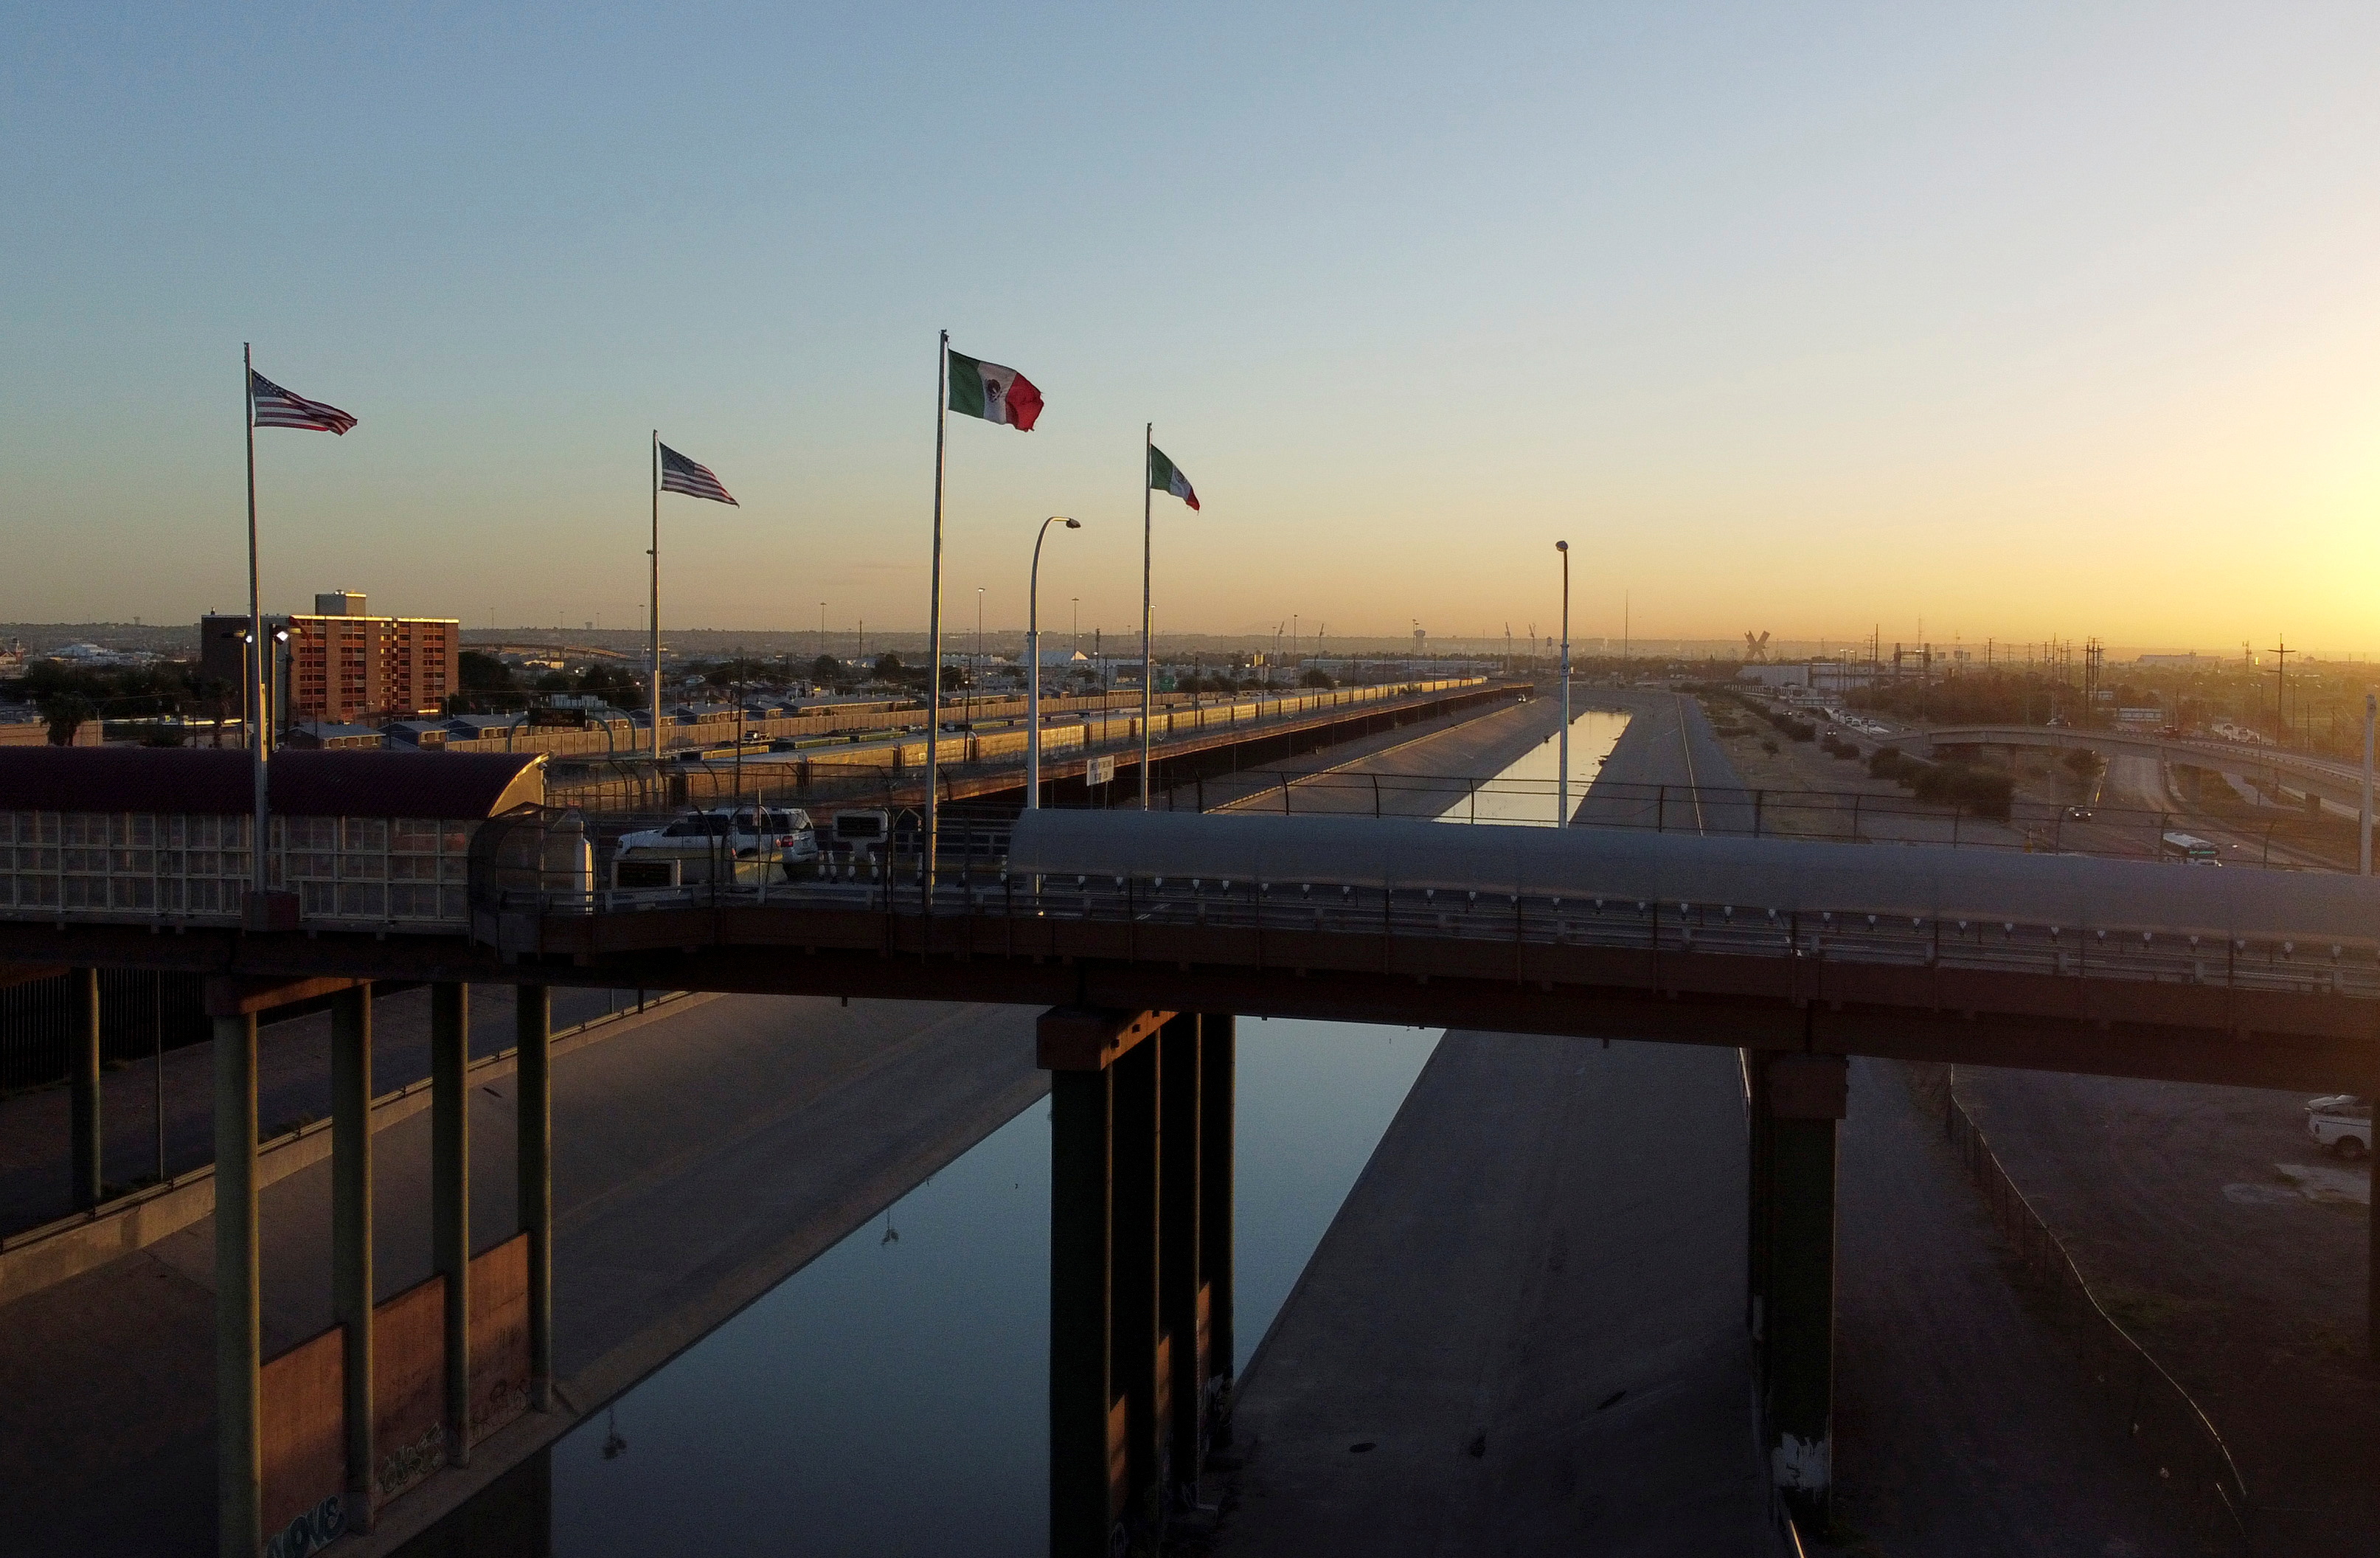 Une vue générale montre le pont frontalier international de Lerdo Stanton après que le département américain de la Sécurité intérieure a annoncé la réouverture prochaine de sa frontière en novembre via des ports d'entrée terrestres pour les personnes vaccinées contre la maladie à coronavirus (COVID-19) avec des vaccins autorisés par l'Organisation mondiale de la santé. (OMS), à Ciudad Juarez, Mexique, le 13 octobre 2021. Photo prise avec un drone.  REUTERS/José Luis Gonzalez